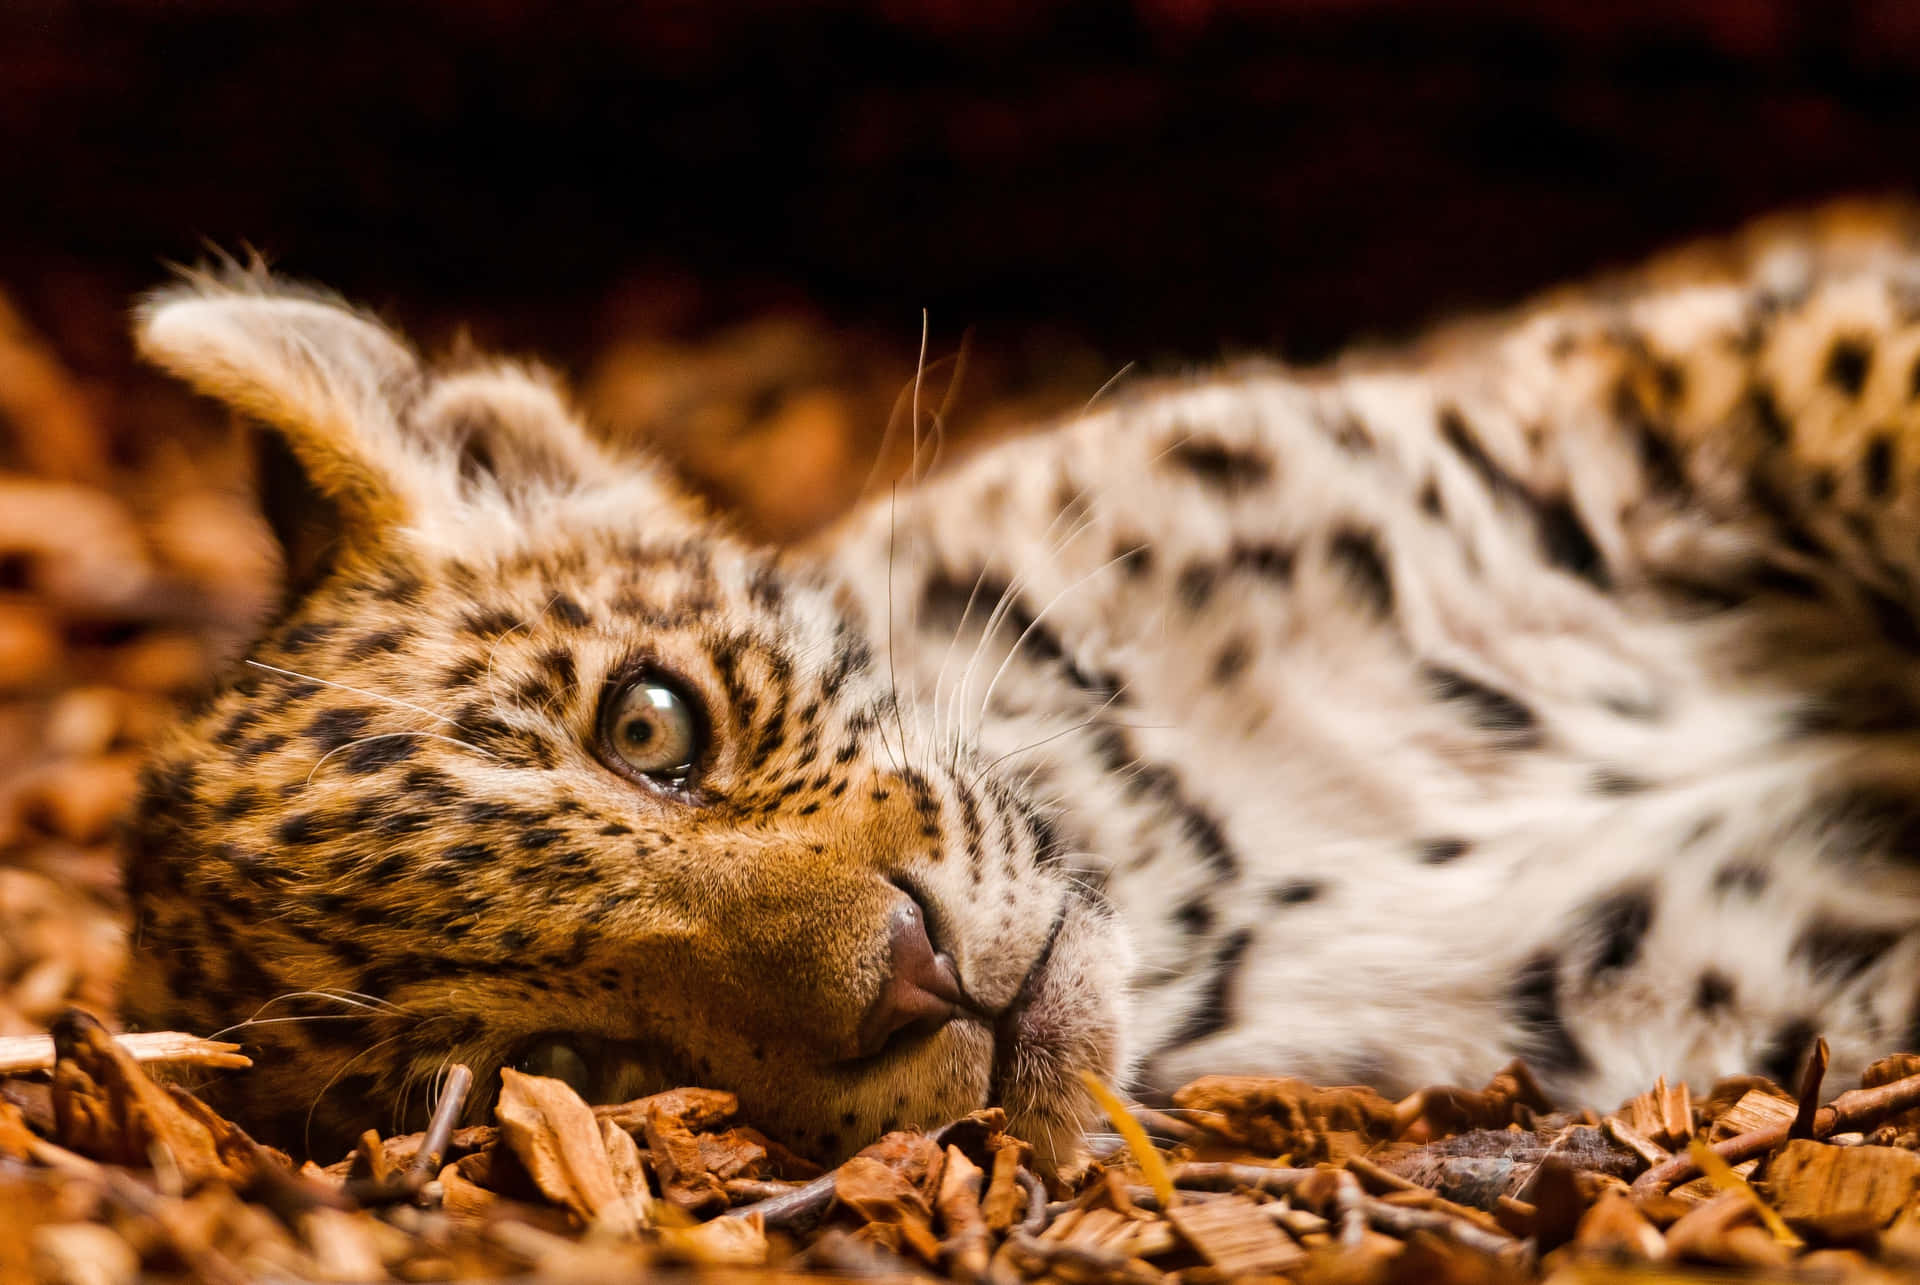 Etnærbillede Af En Smuk Leopard I Sin Fulde Pragt.